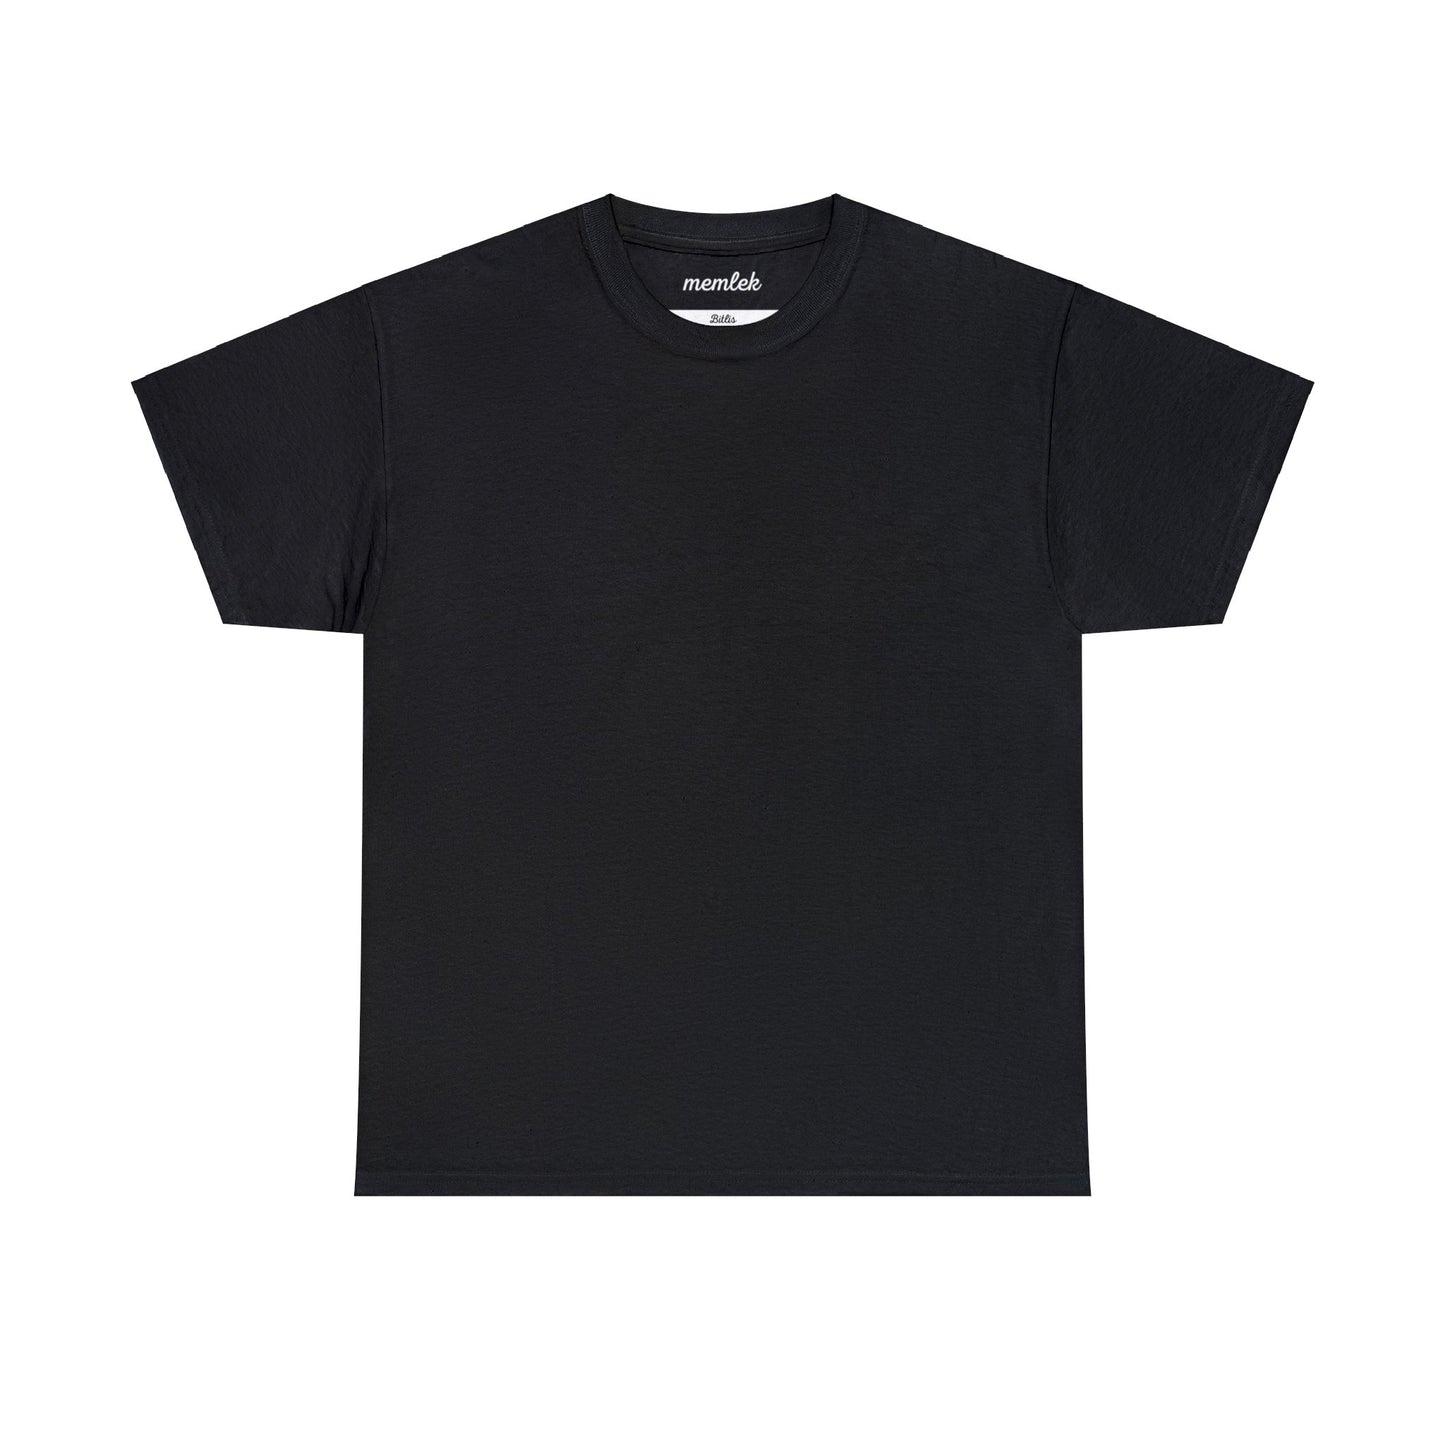 Kurt - 13 Bitlis - T-Shirt - Back Print - Black/White